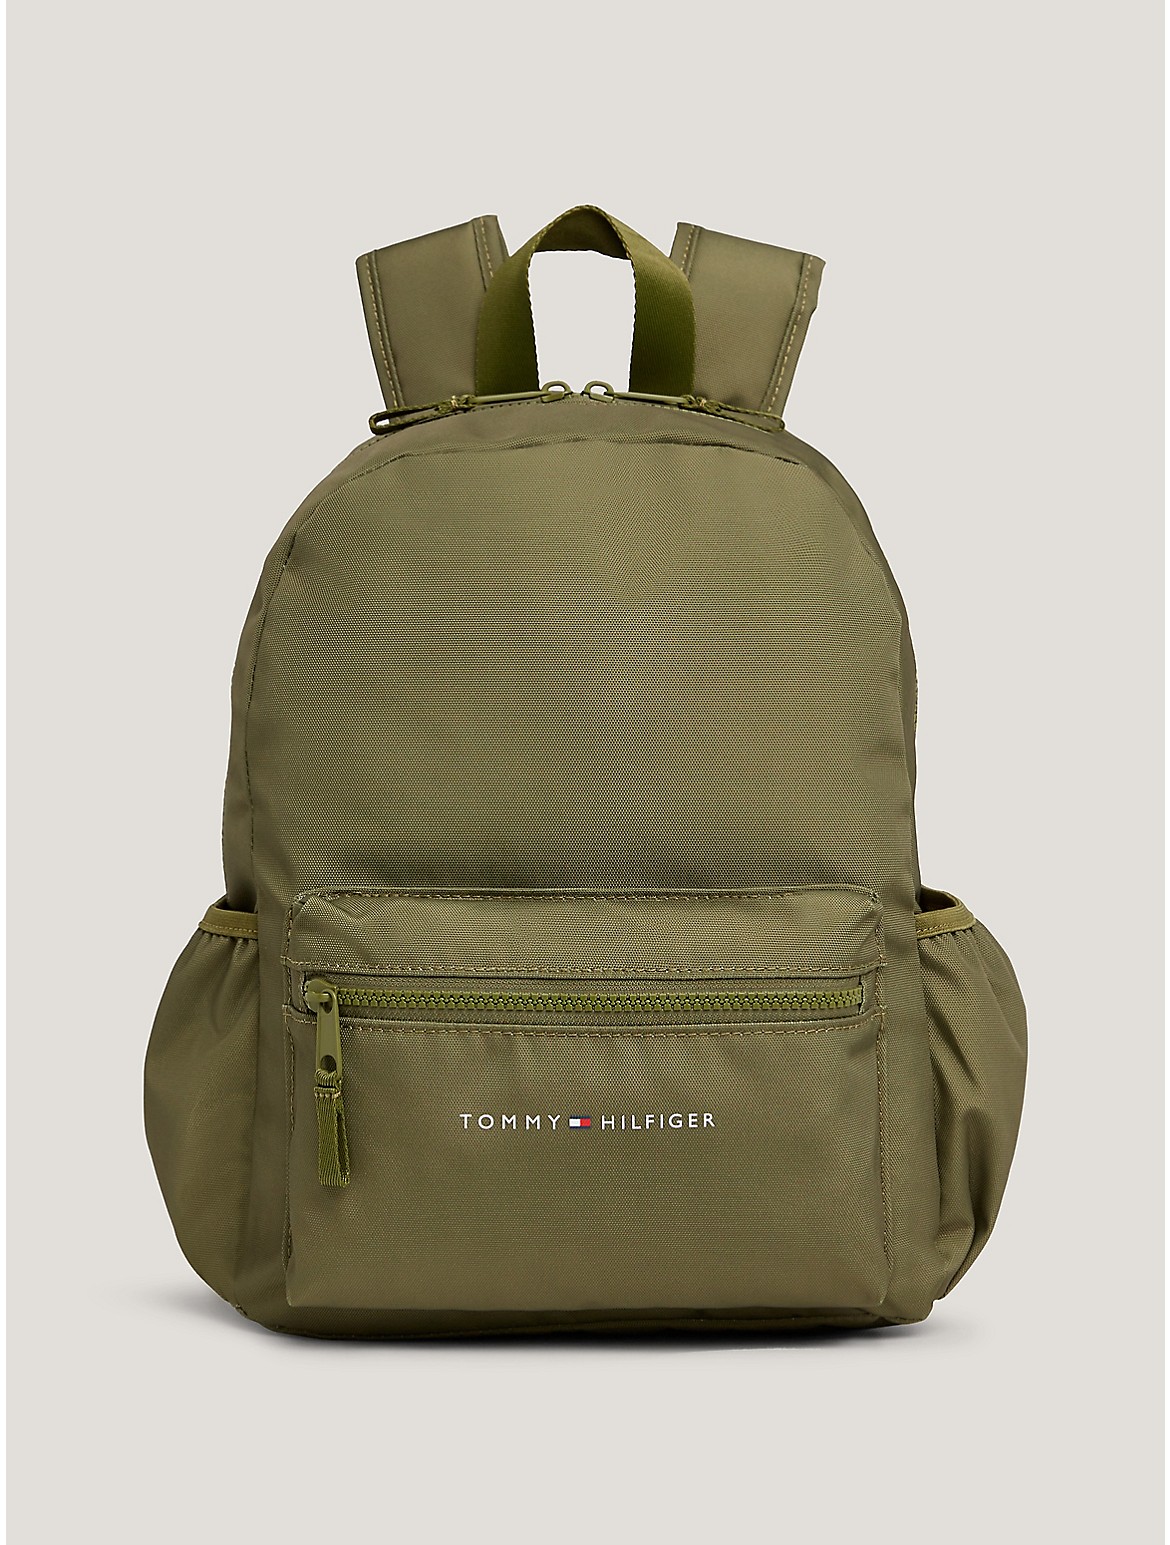 Tommy Hilfiger Kids' TH Flag Logo Backpack - Green